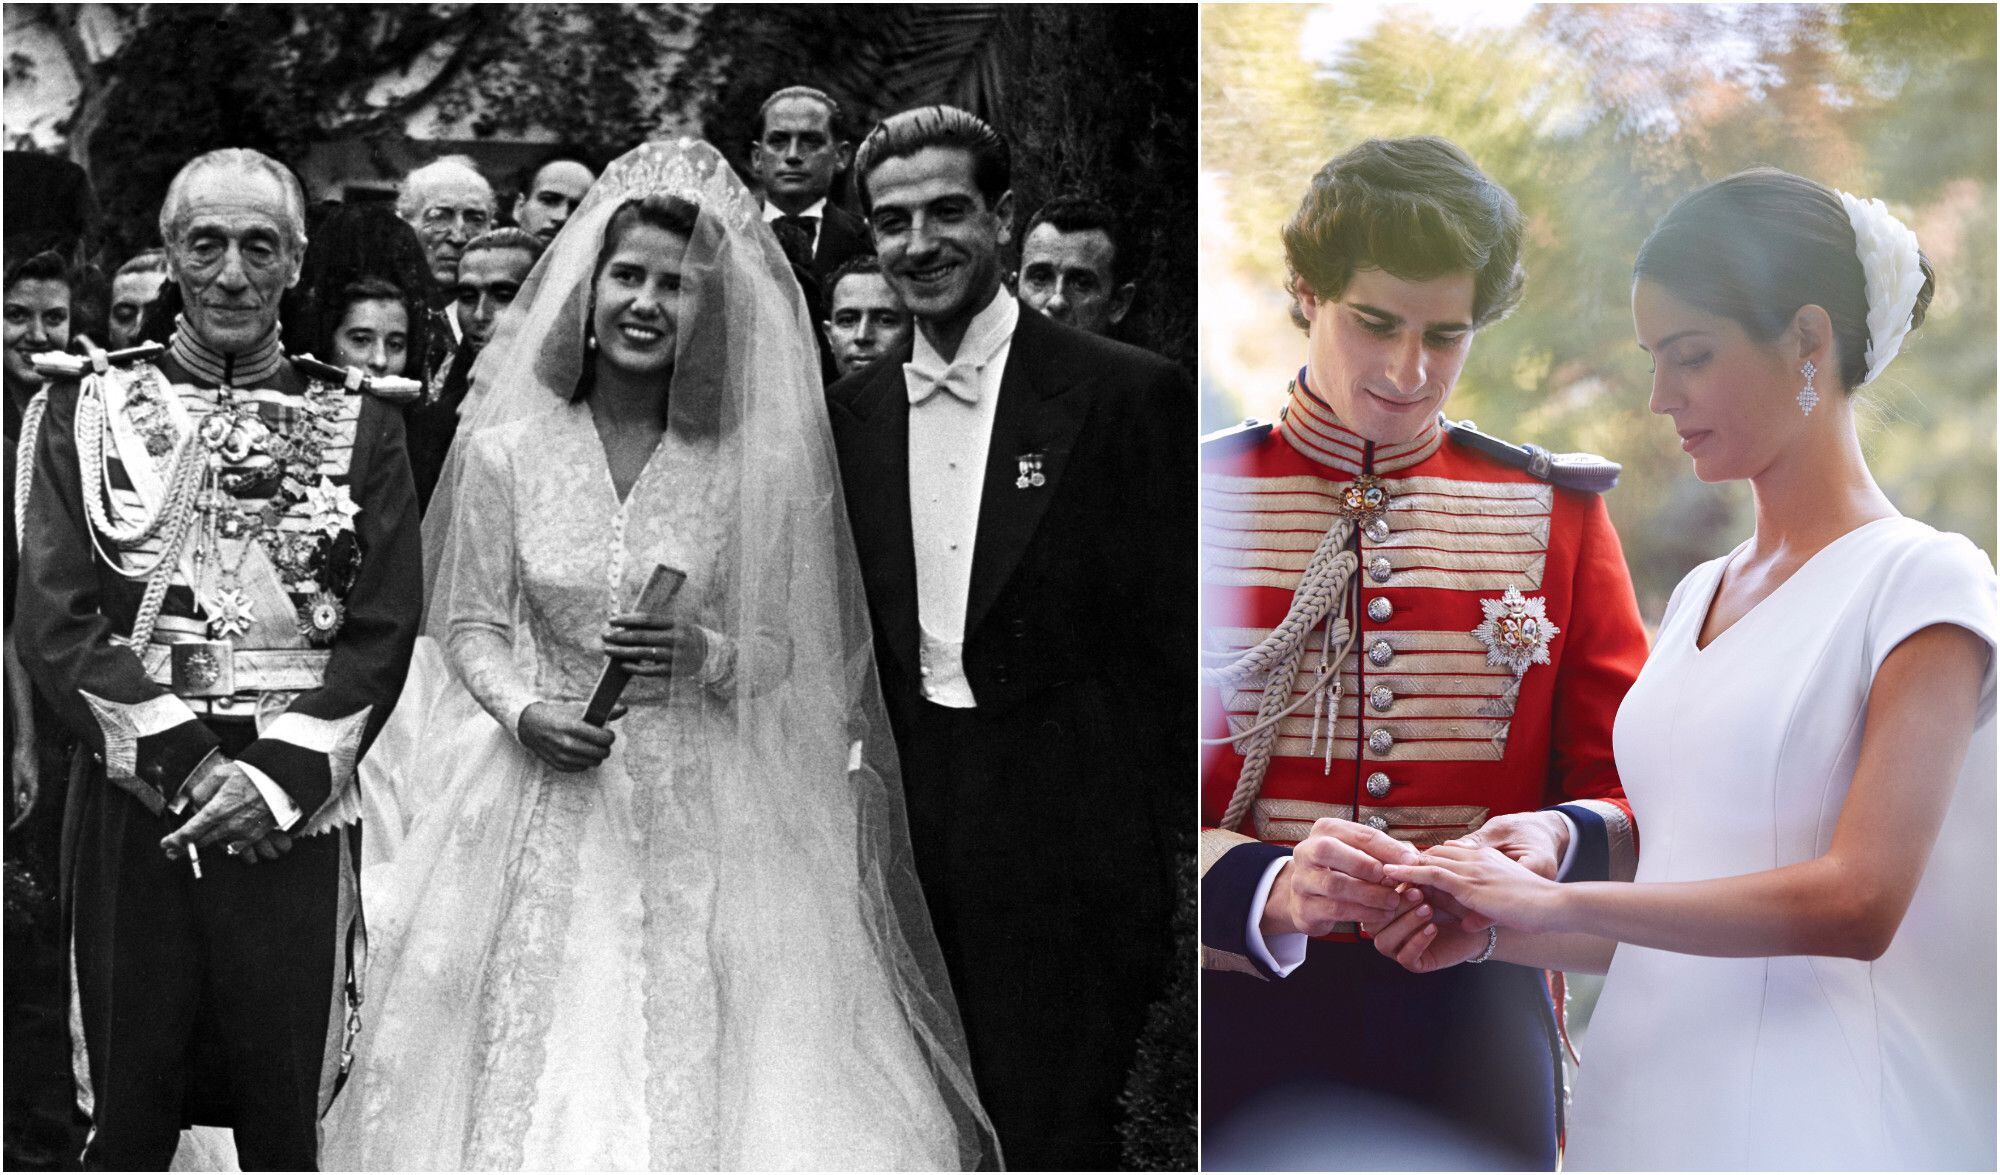 A la izquierda, el duque de Alba (izquierda) con su hija Cayetana Fitz-James Stuart, a los 21 años, y su nuevo marido don Luis Martínez de Irujo, de 27 años, saliendo de la ceremonia en la Catedral de Sevilla el 12 de octubre de 1947. A la derecha, Fernando Fitz-James Stuart y Sofía Palazuelo en su boda el 6 de octubre de 2018 en Madrid.